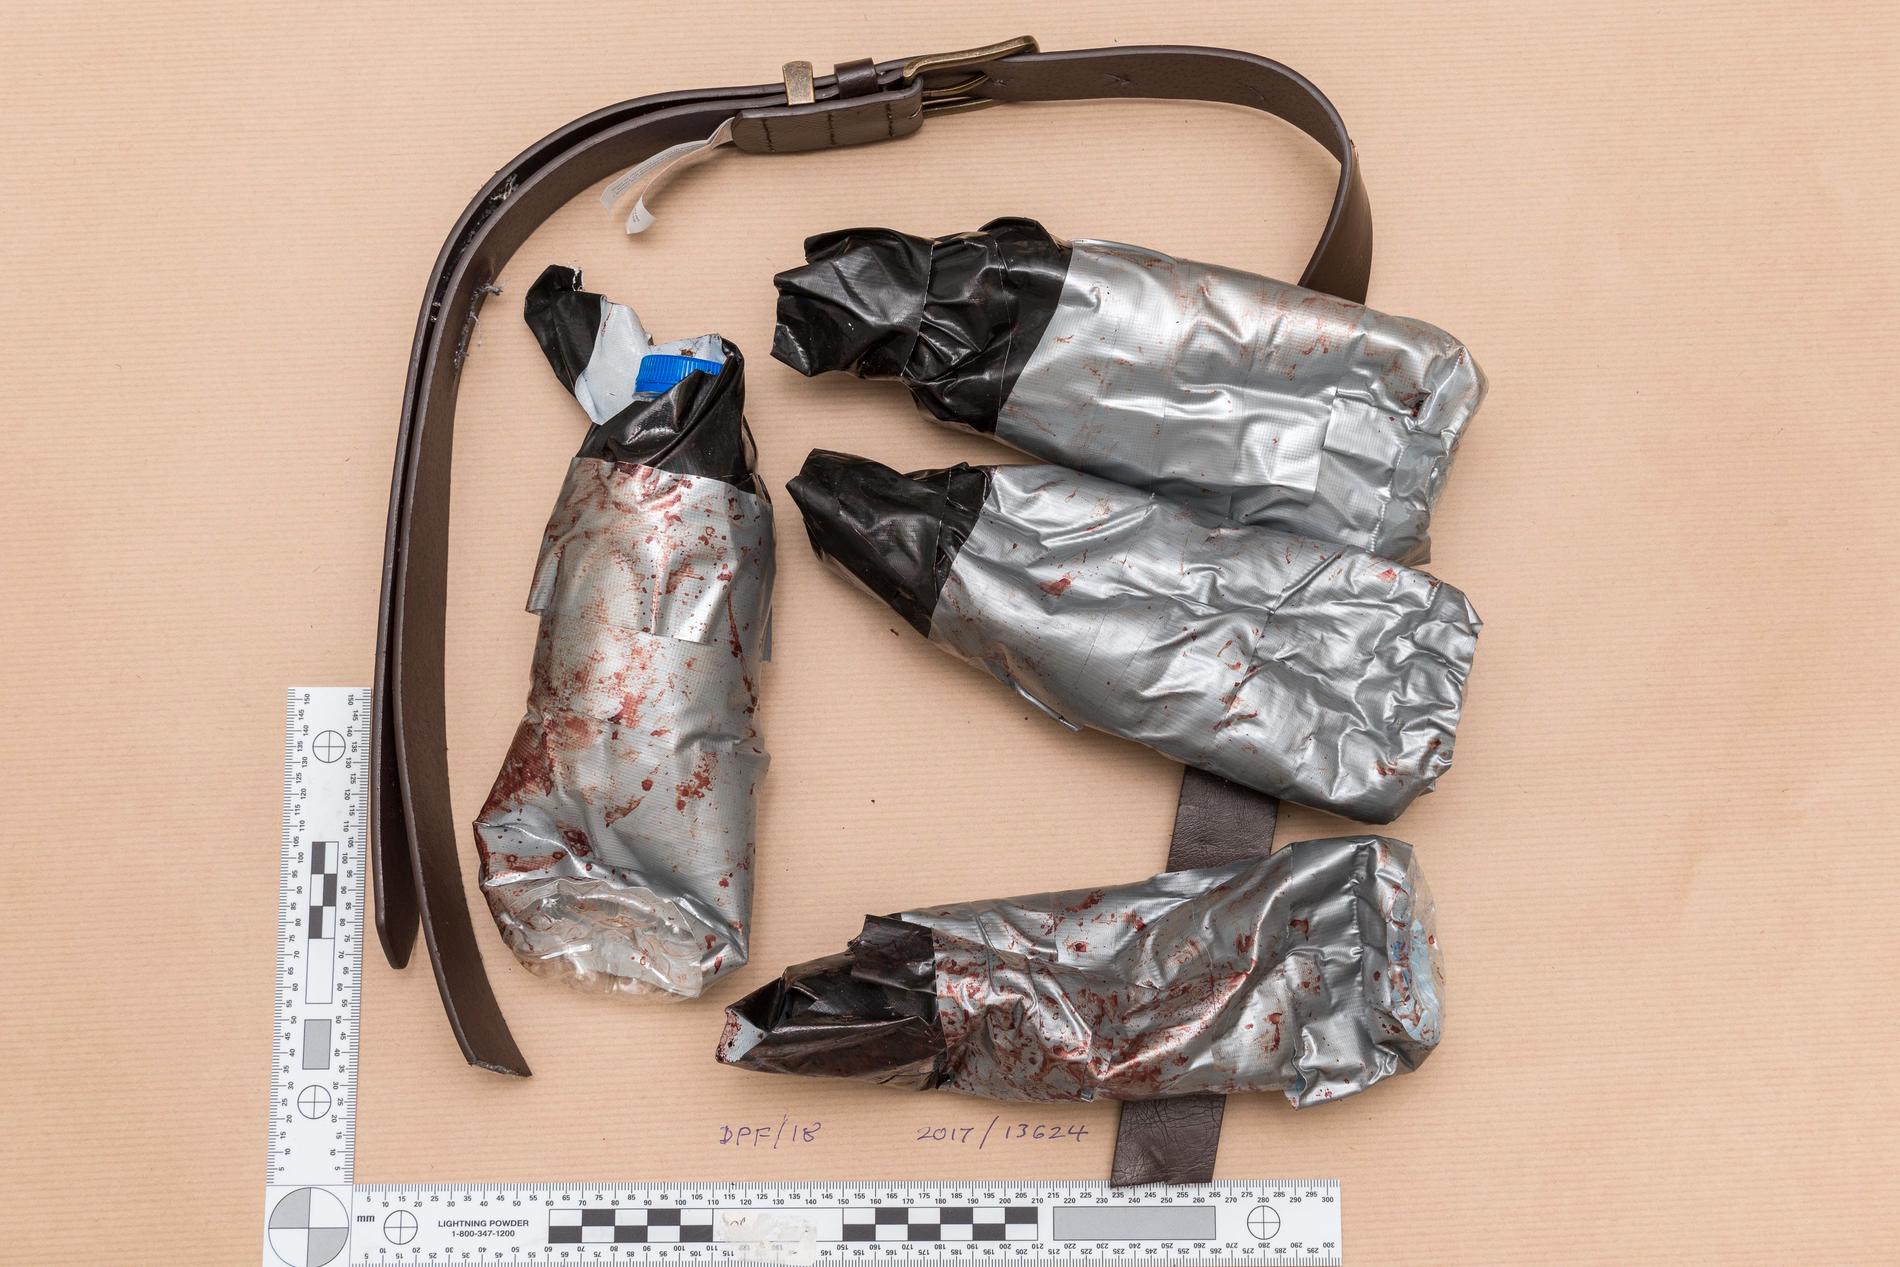 Terroristerna hade lindat silvertejp runt plastflaskor för att de skulle se ut som sprängmedel.